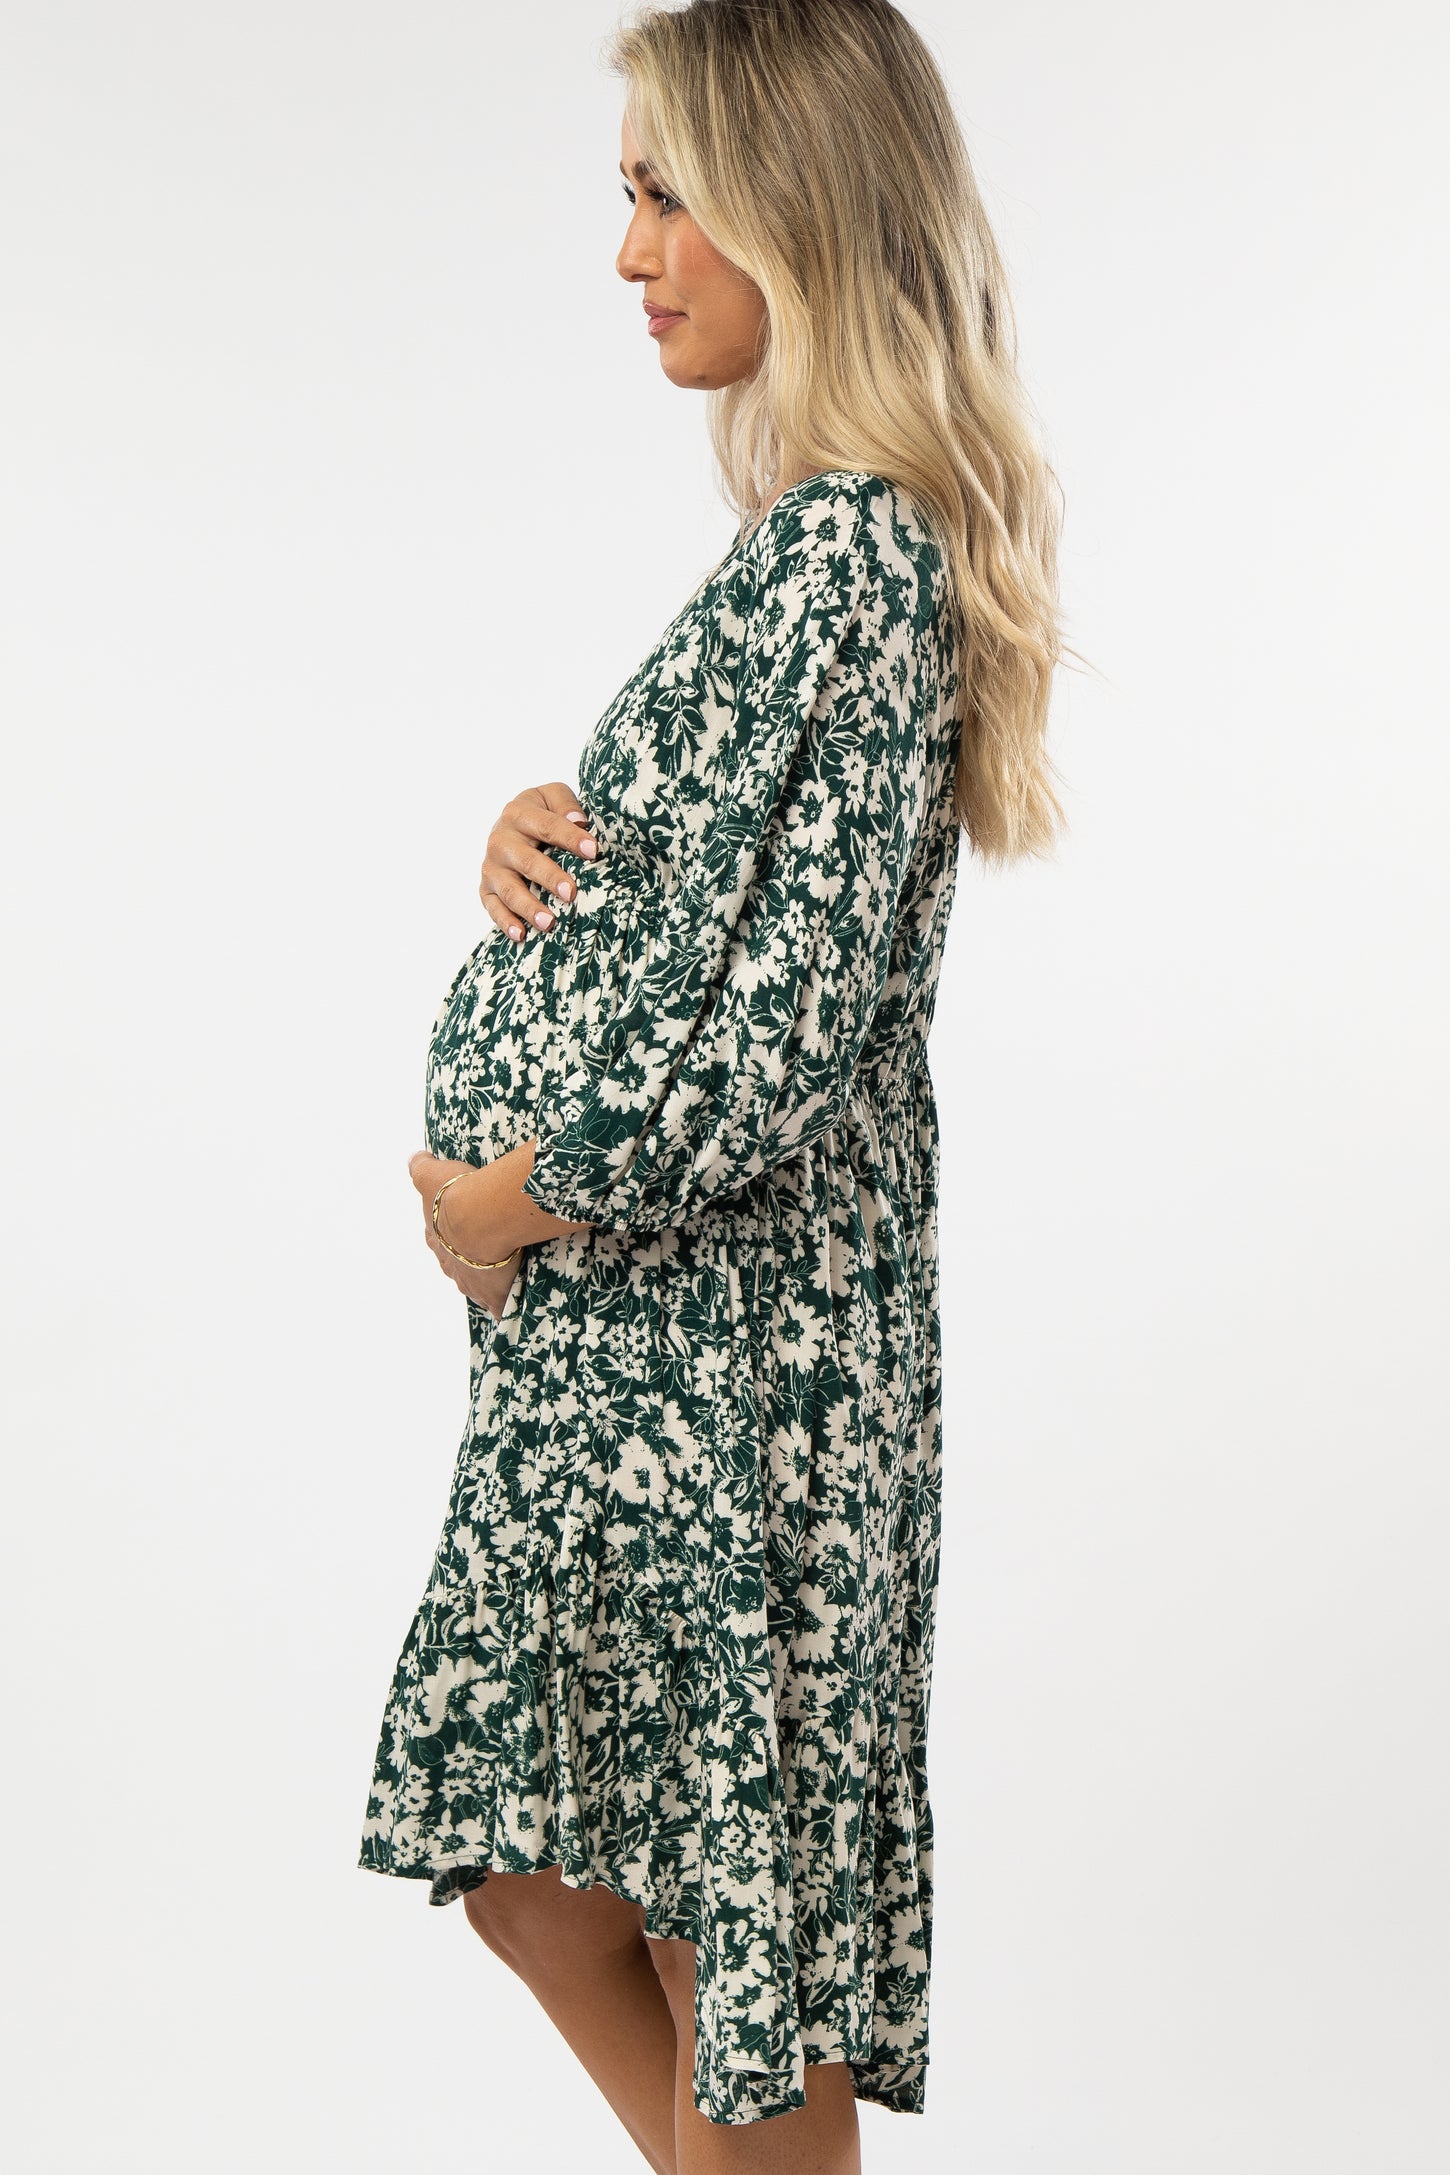 Forest Green Floral V-Neck Maternity Dress